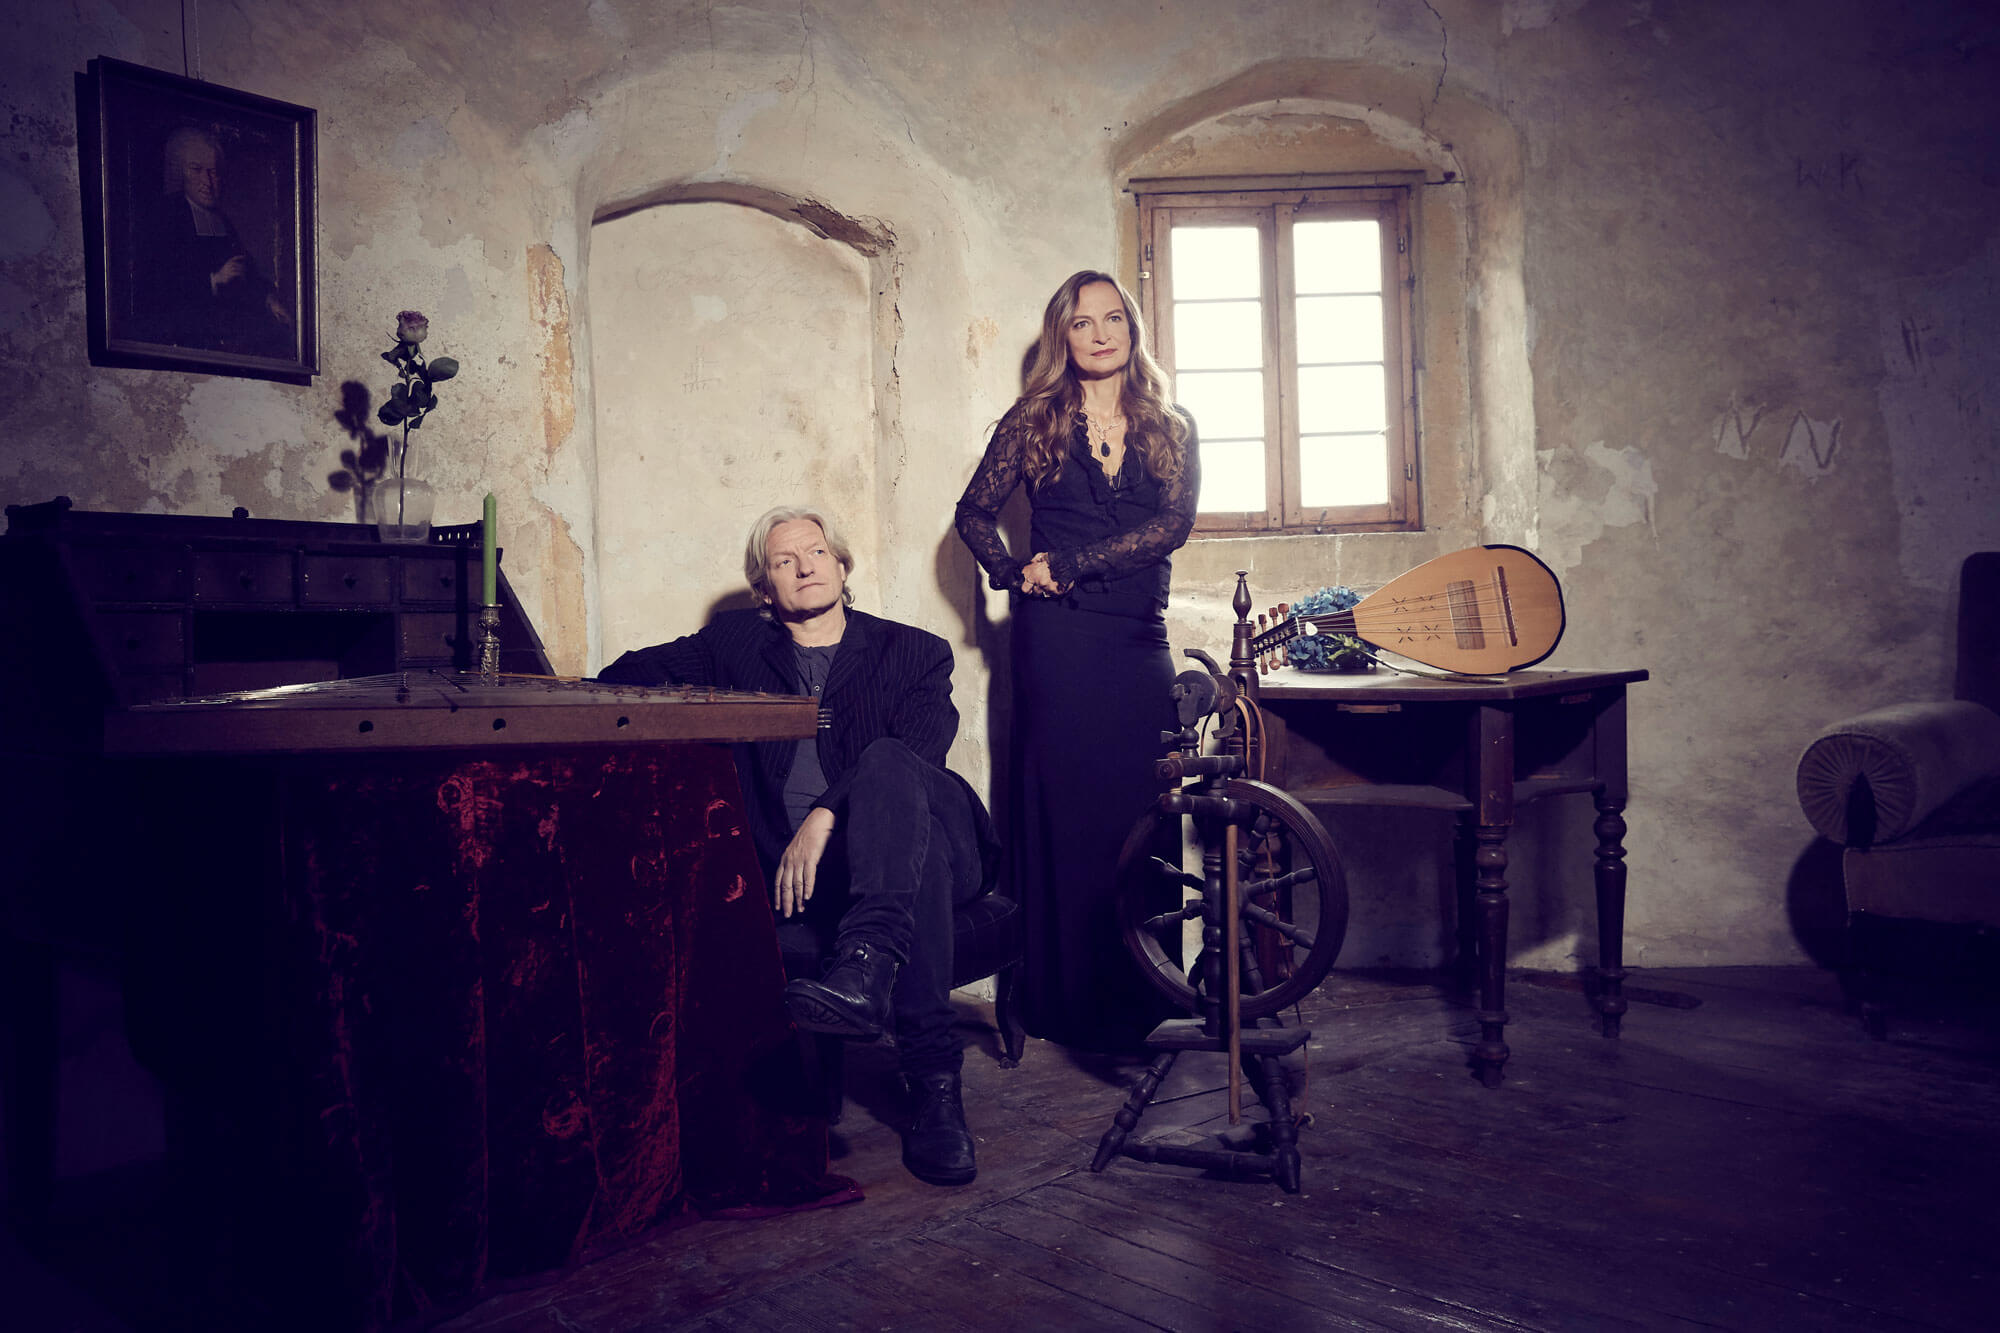   Qntal Musik Foto mit Sigrid Hausen und Michael Popp in einer Burg Stube